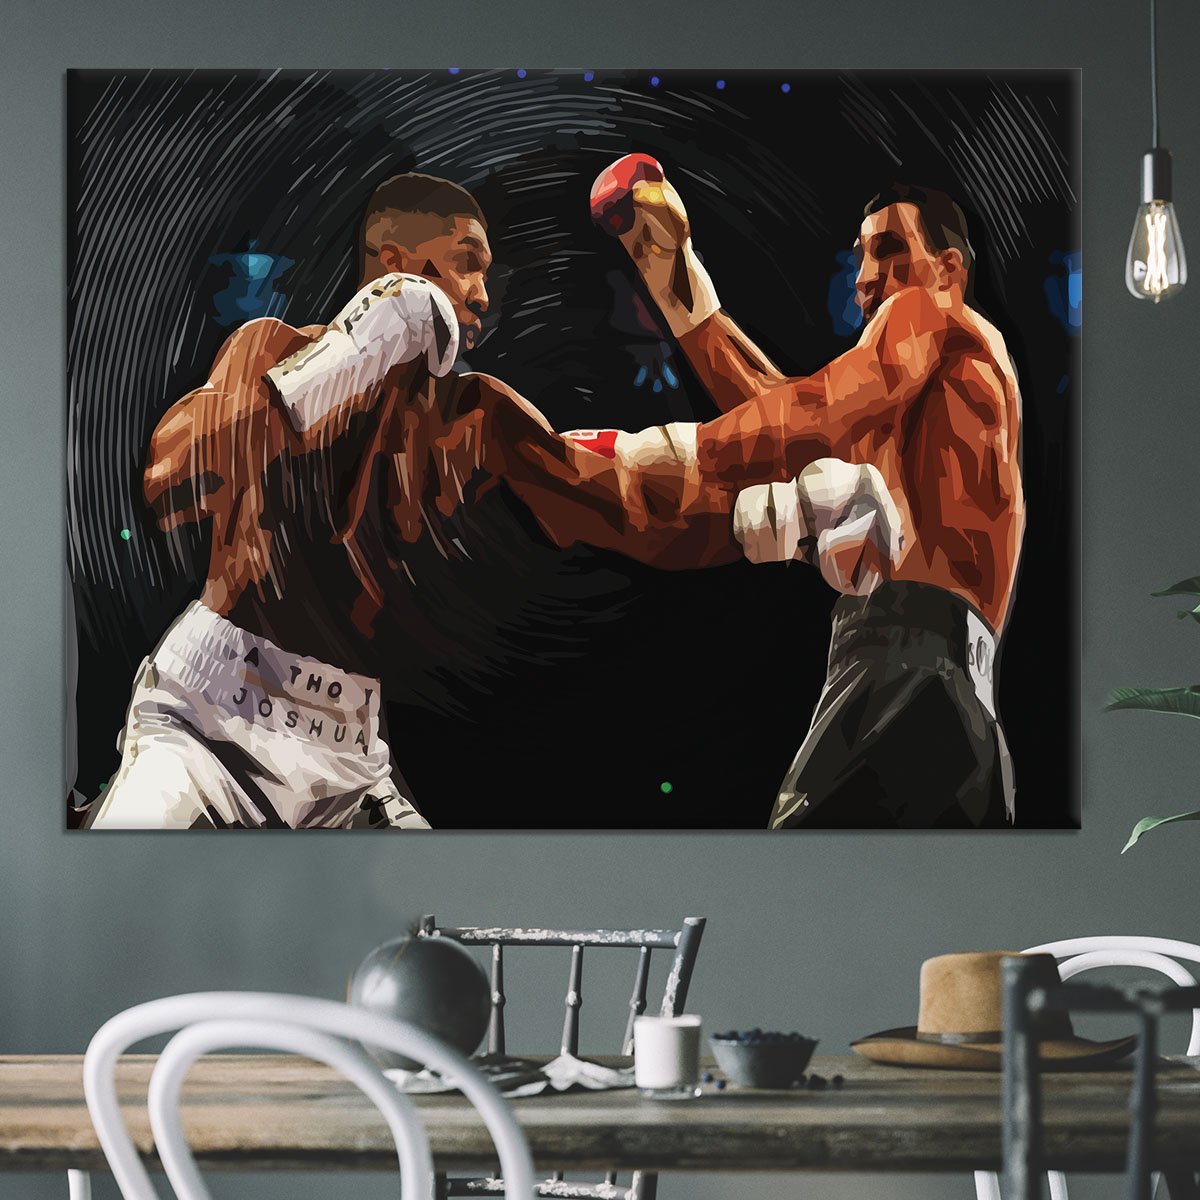 Anthony Joshua vs Klitschko Punch Canvas Print or Poster